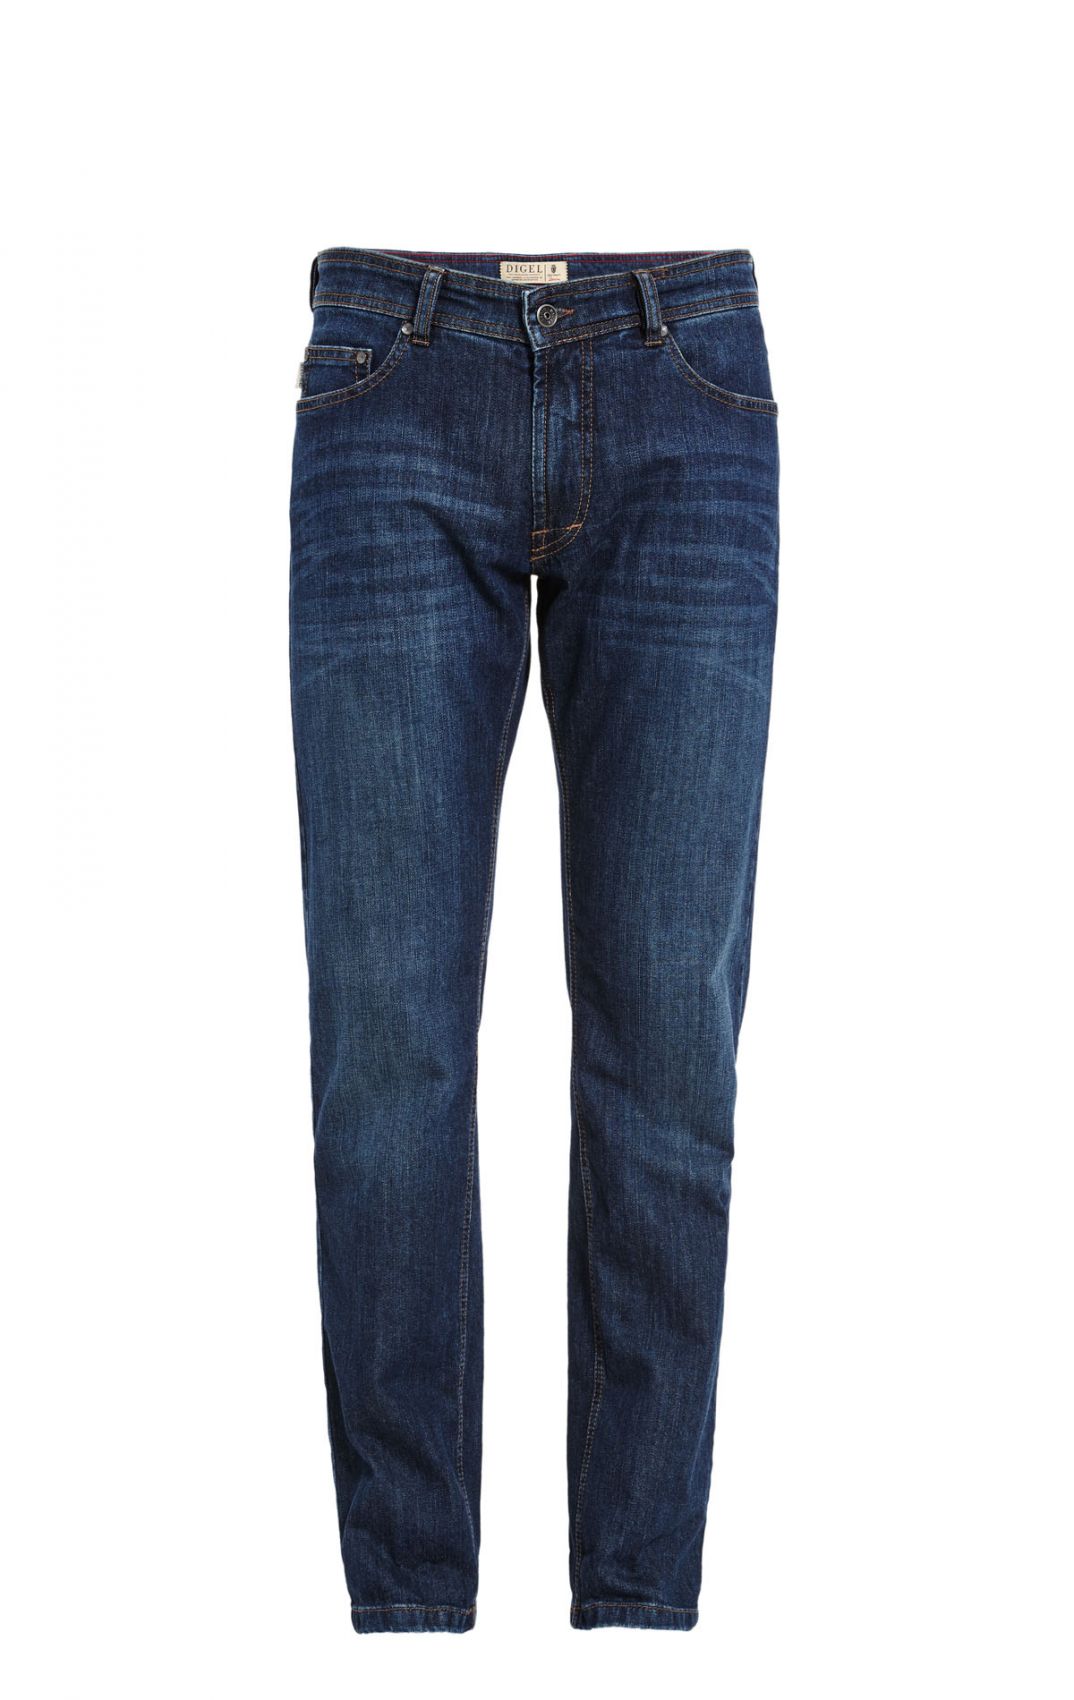 Jeans man Digel blue stone washed denim stretch modern fit outlet online